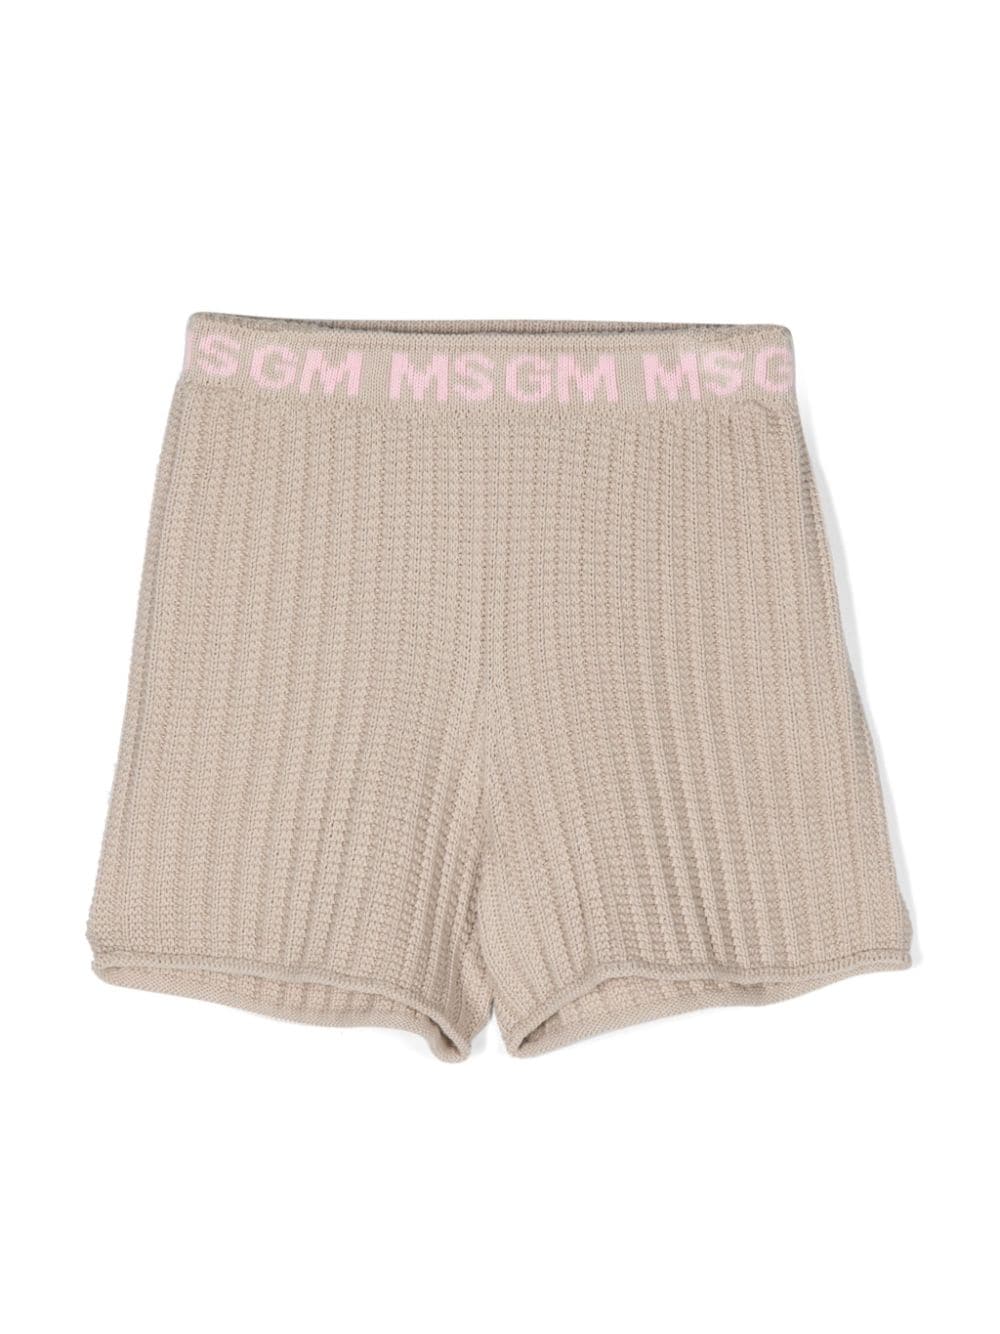 MSGM Kids knitted cotton shorts - Neutrals von MSGM Kids